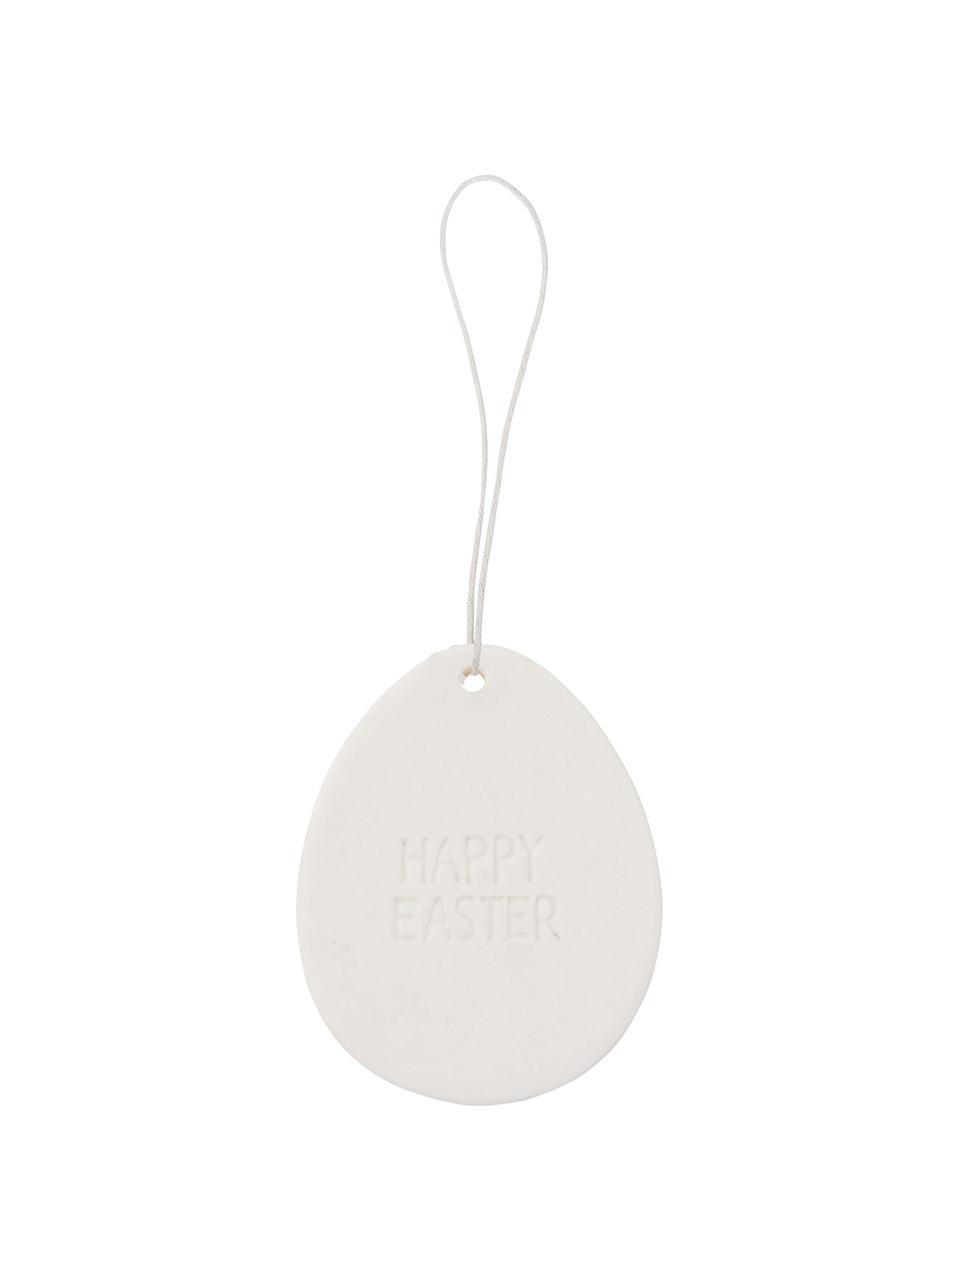 Osteranhänger Easter, 4 Stück, Porzellan, Weiß, H 7 cm